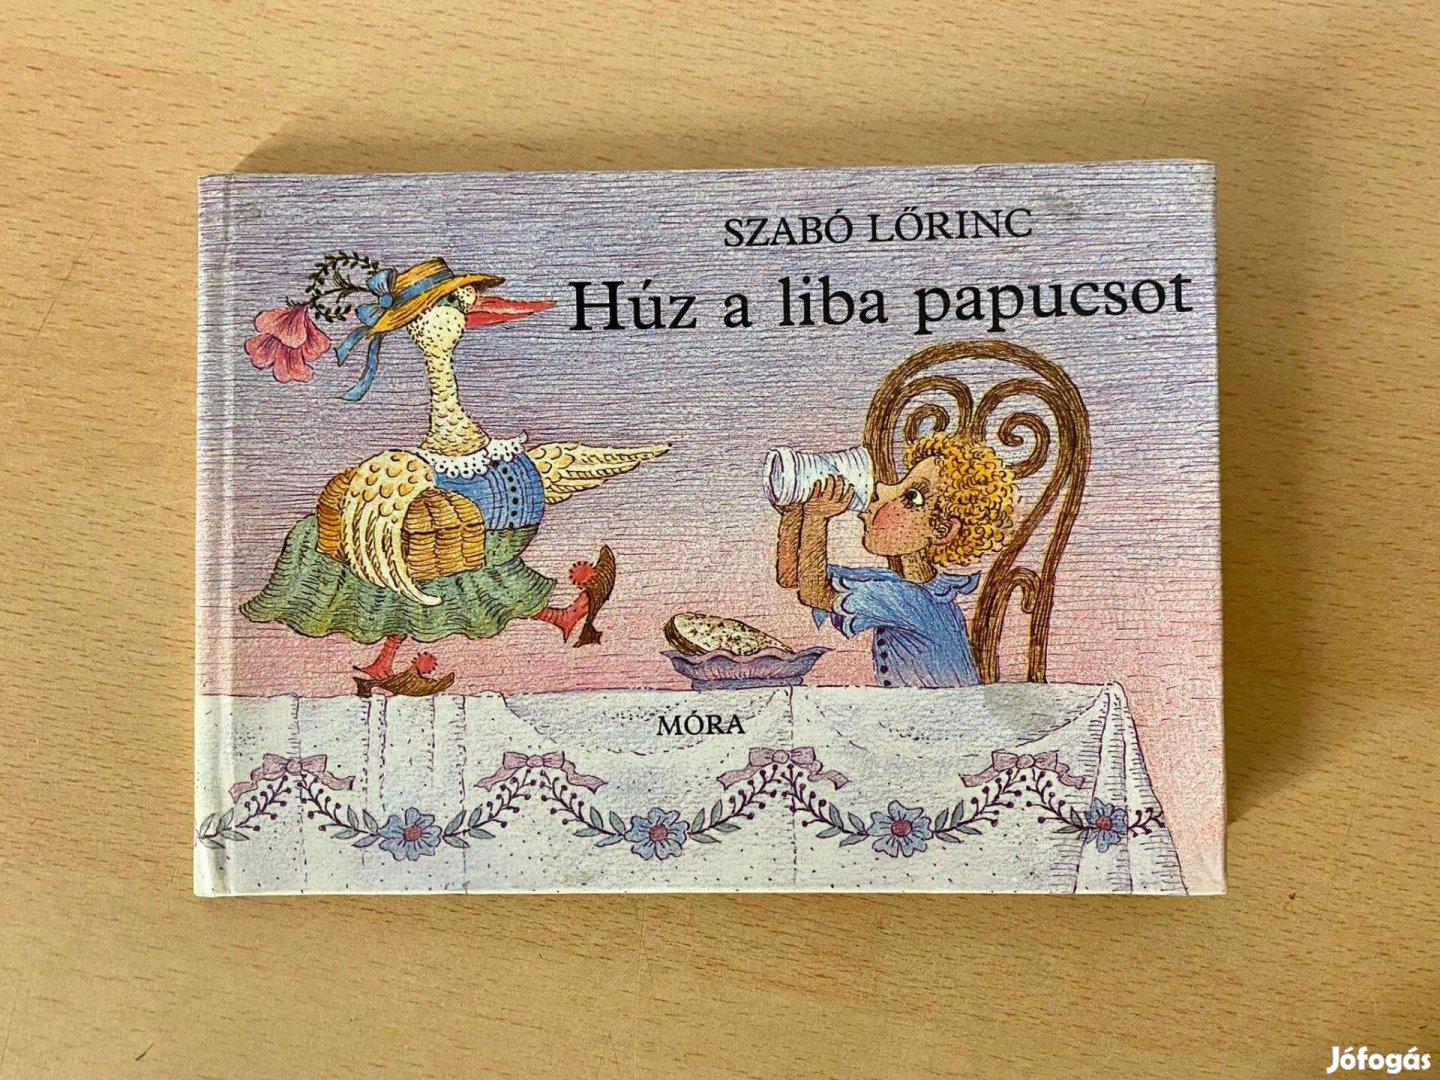 Szabó Lőrinc - Húz a liba papucsot (Gyermekkönyv, Iciri-piciri könyvek